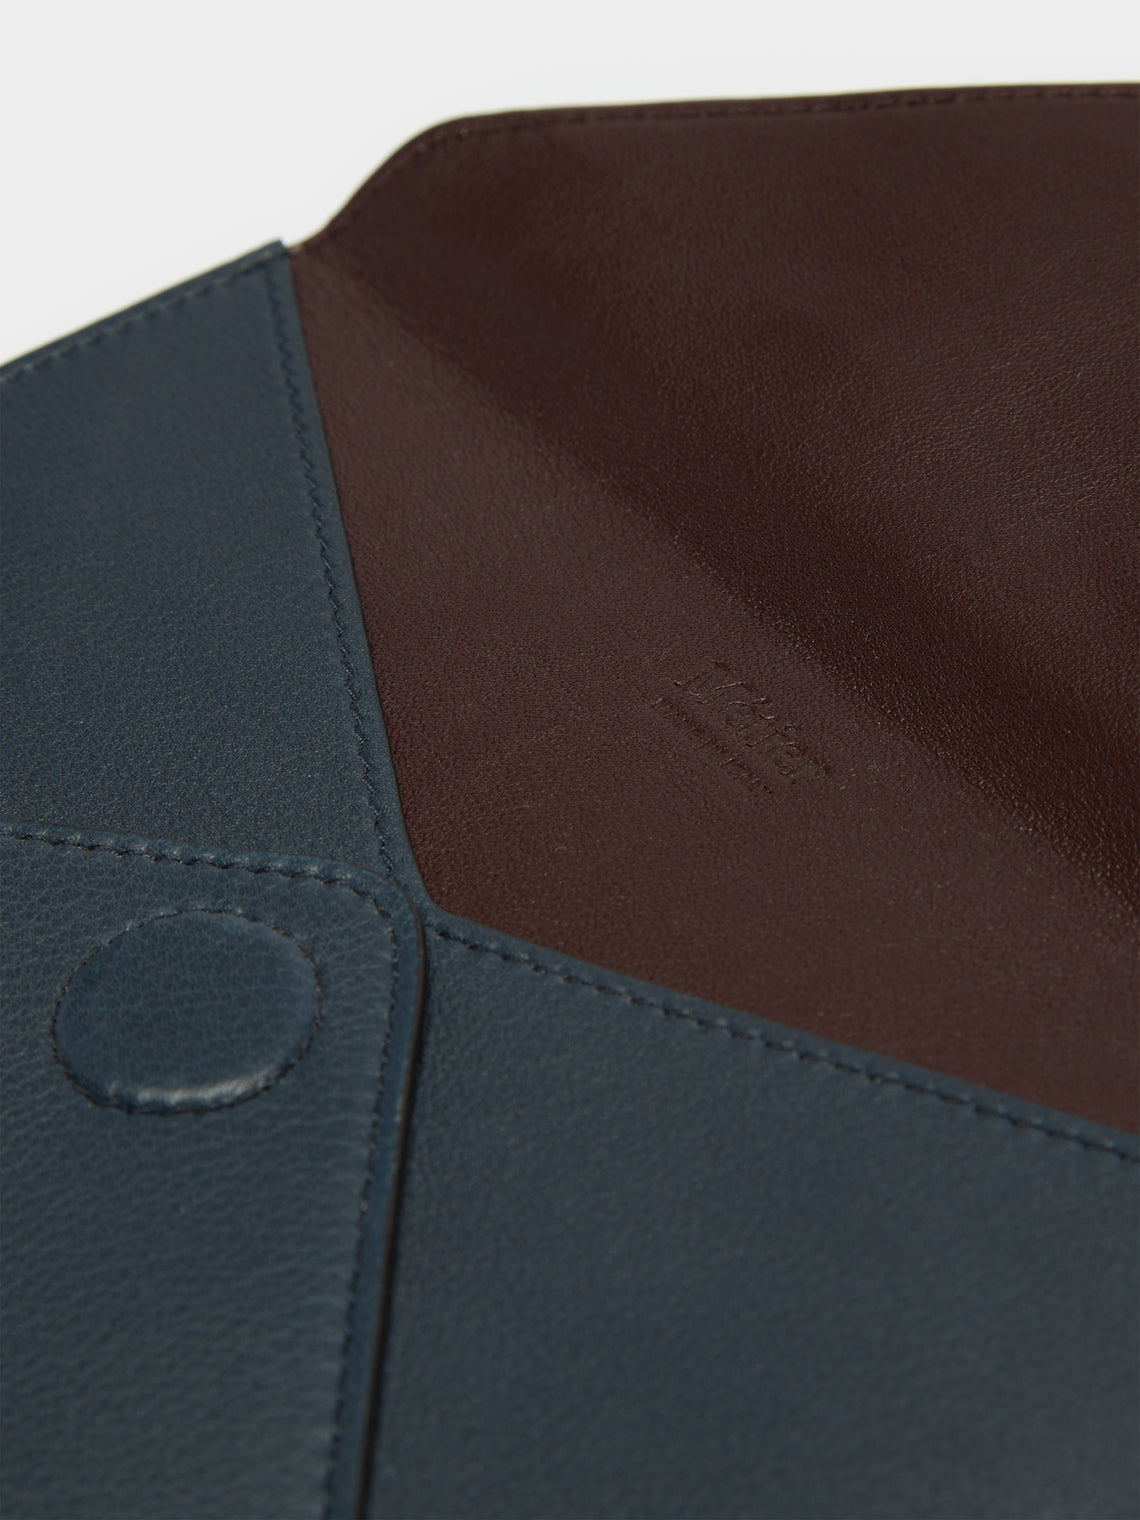 Métier - Leather Envelope - Blue - ABASK